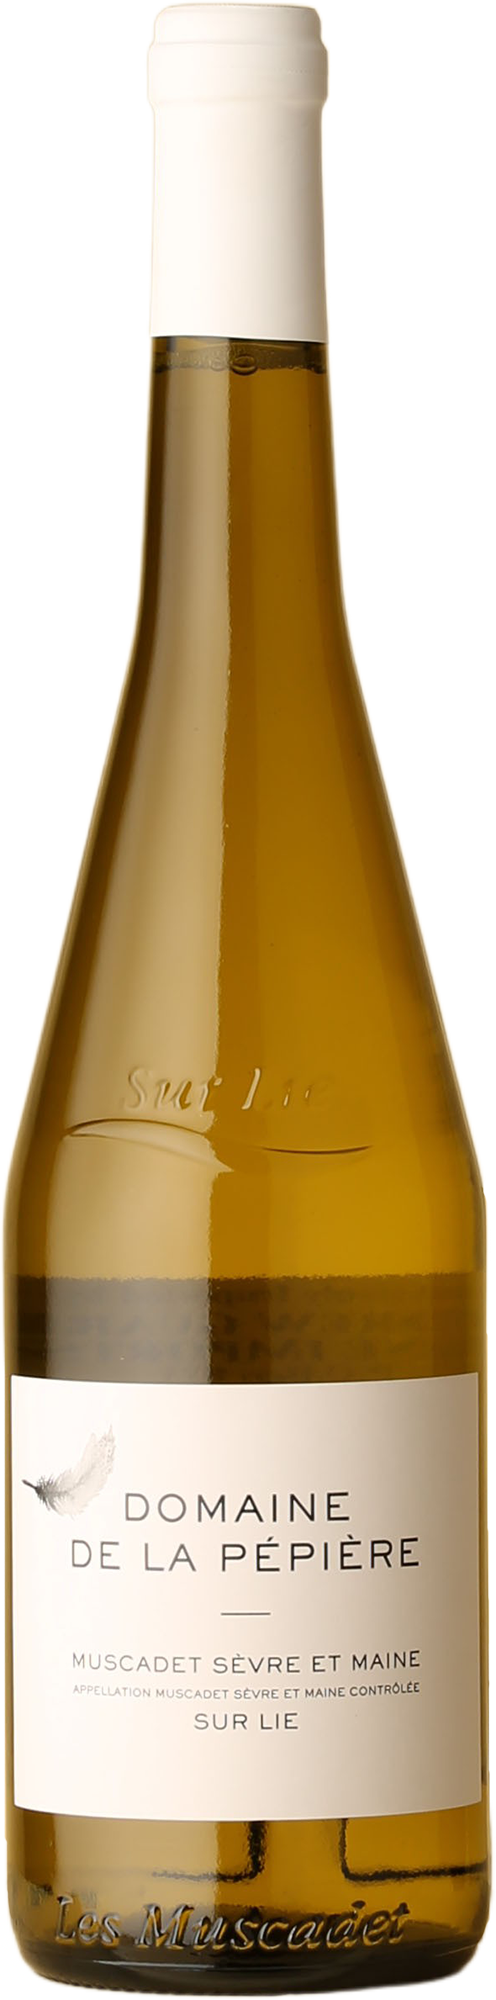 Domaine de la Pépière - Muscadet Sèvre et Maine Melon Blanc 2020 White Wine